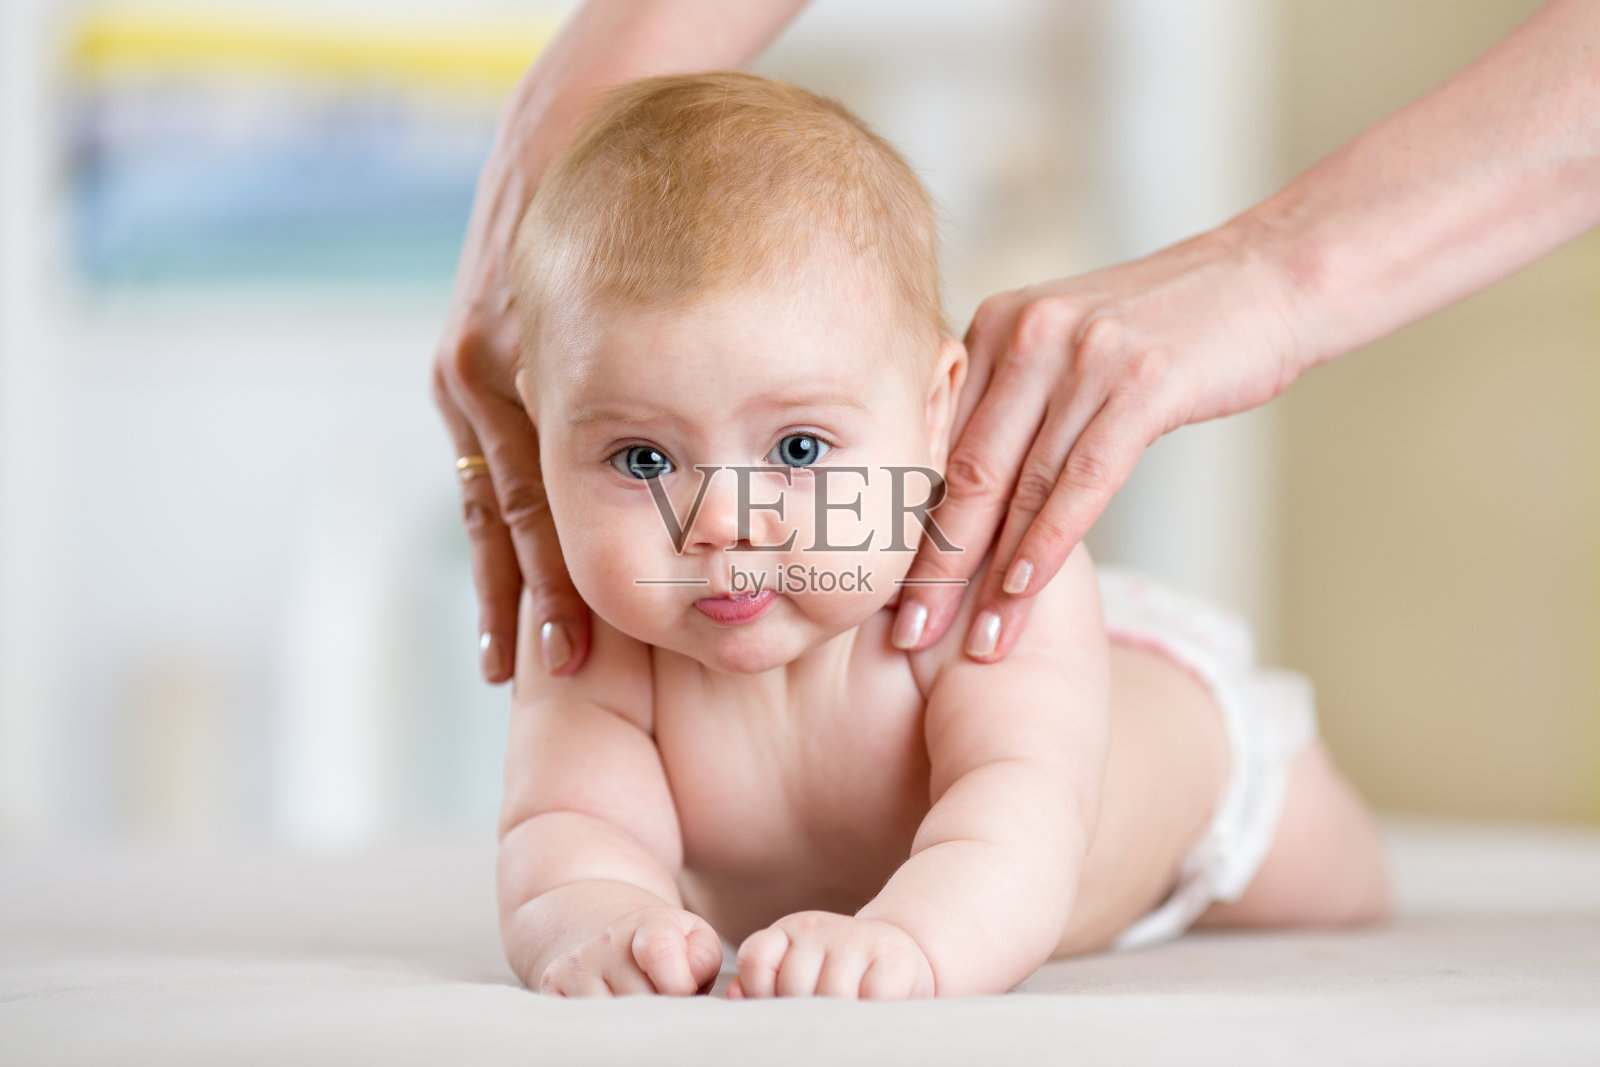 Massaggio al neonato , guida completa alla tecnica da seguire - WDonna.it